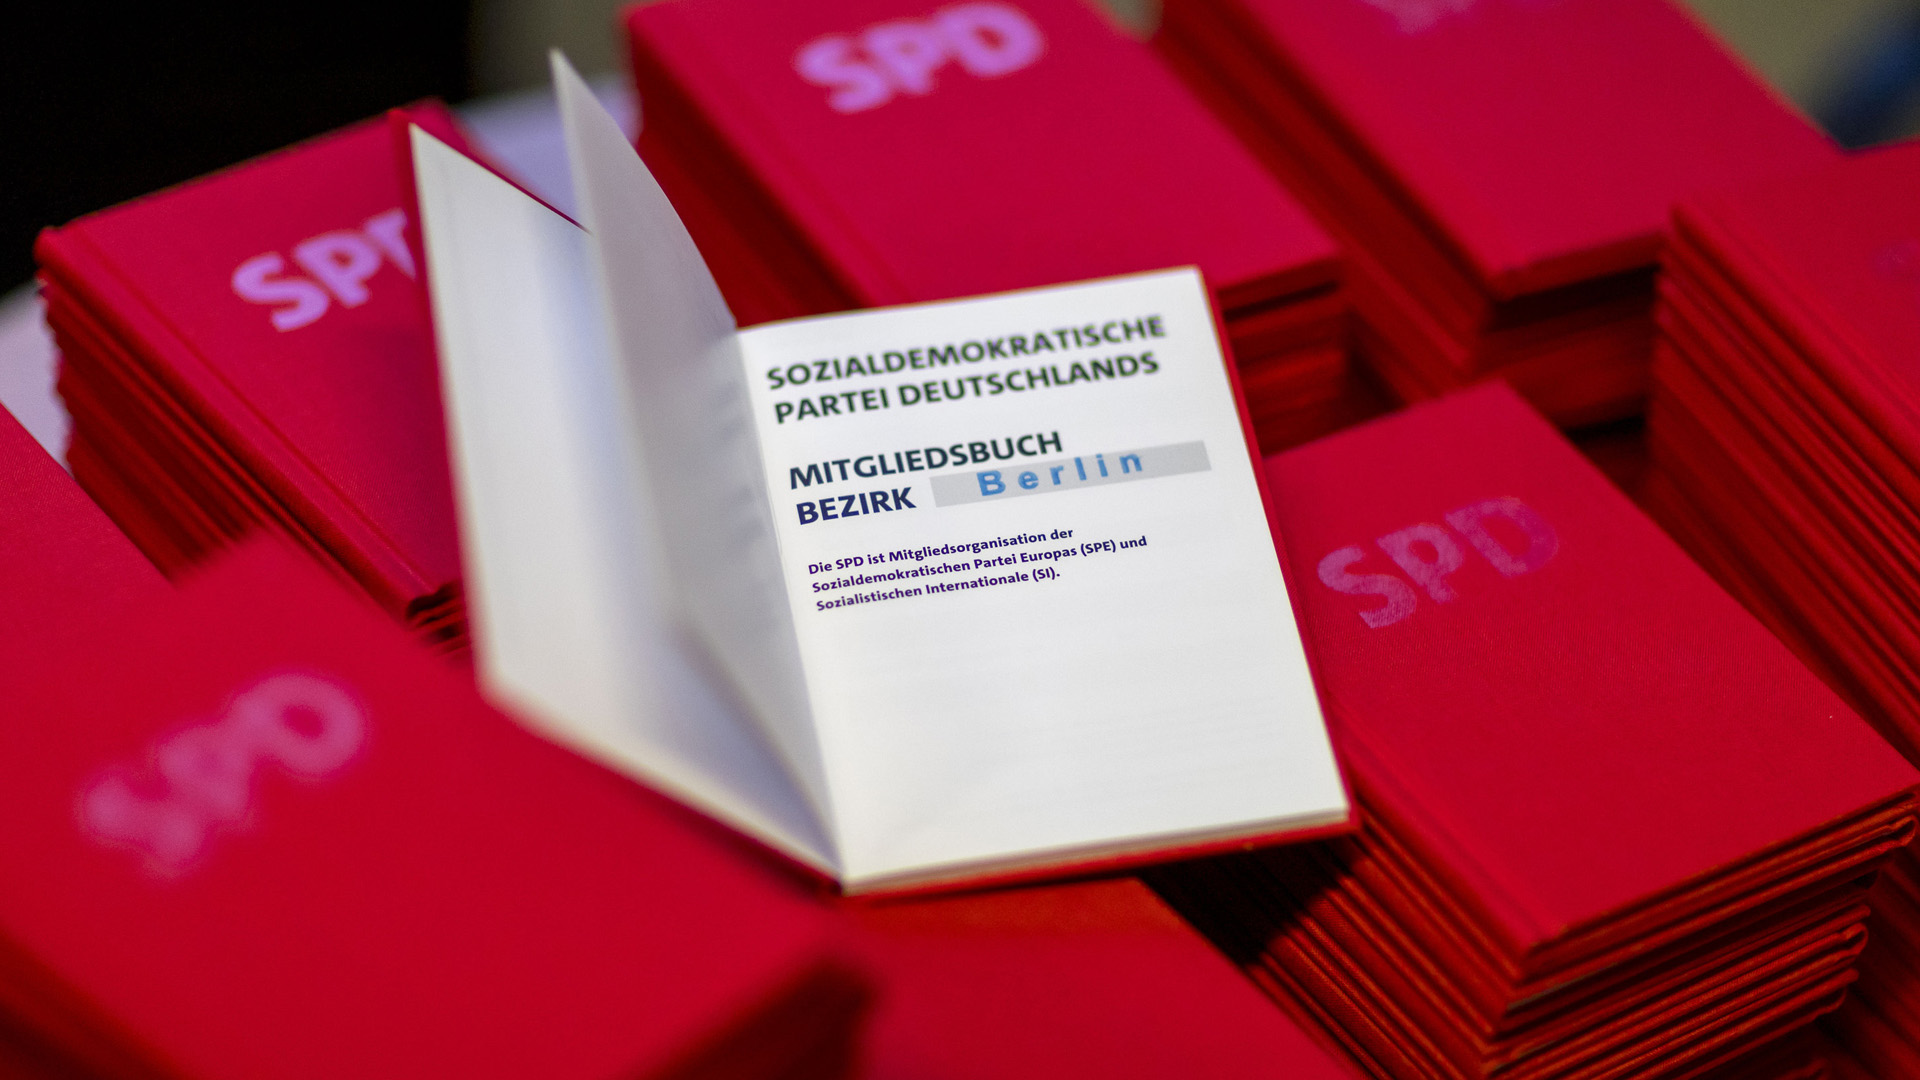 SPD-Parteibücher